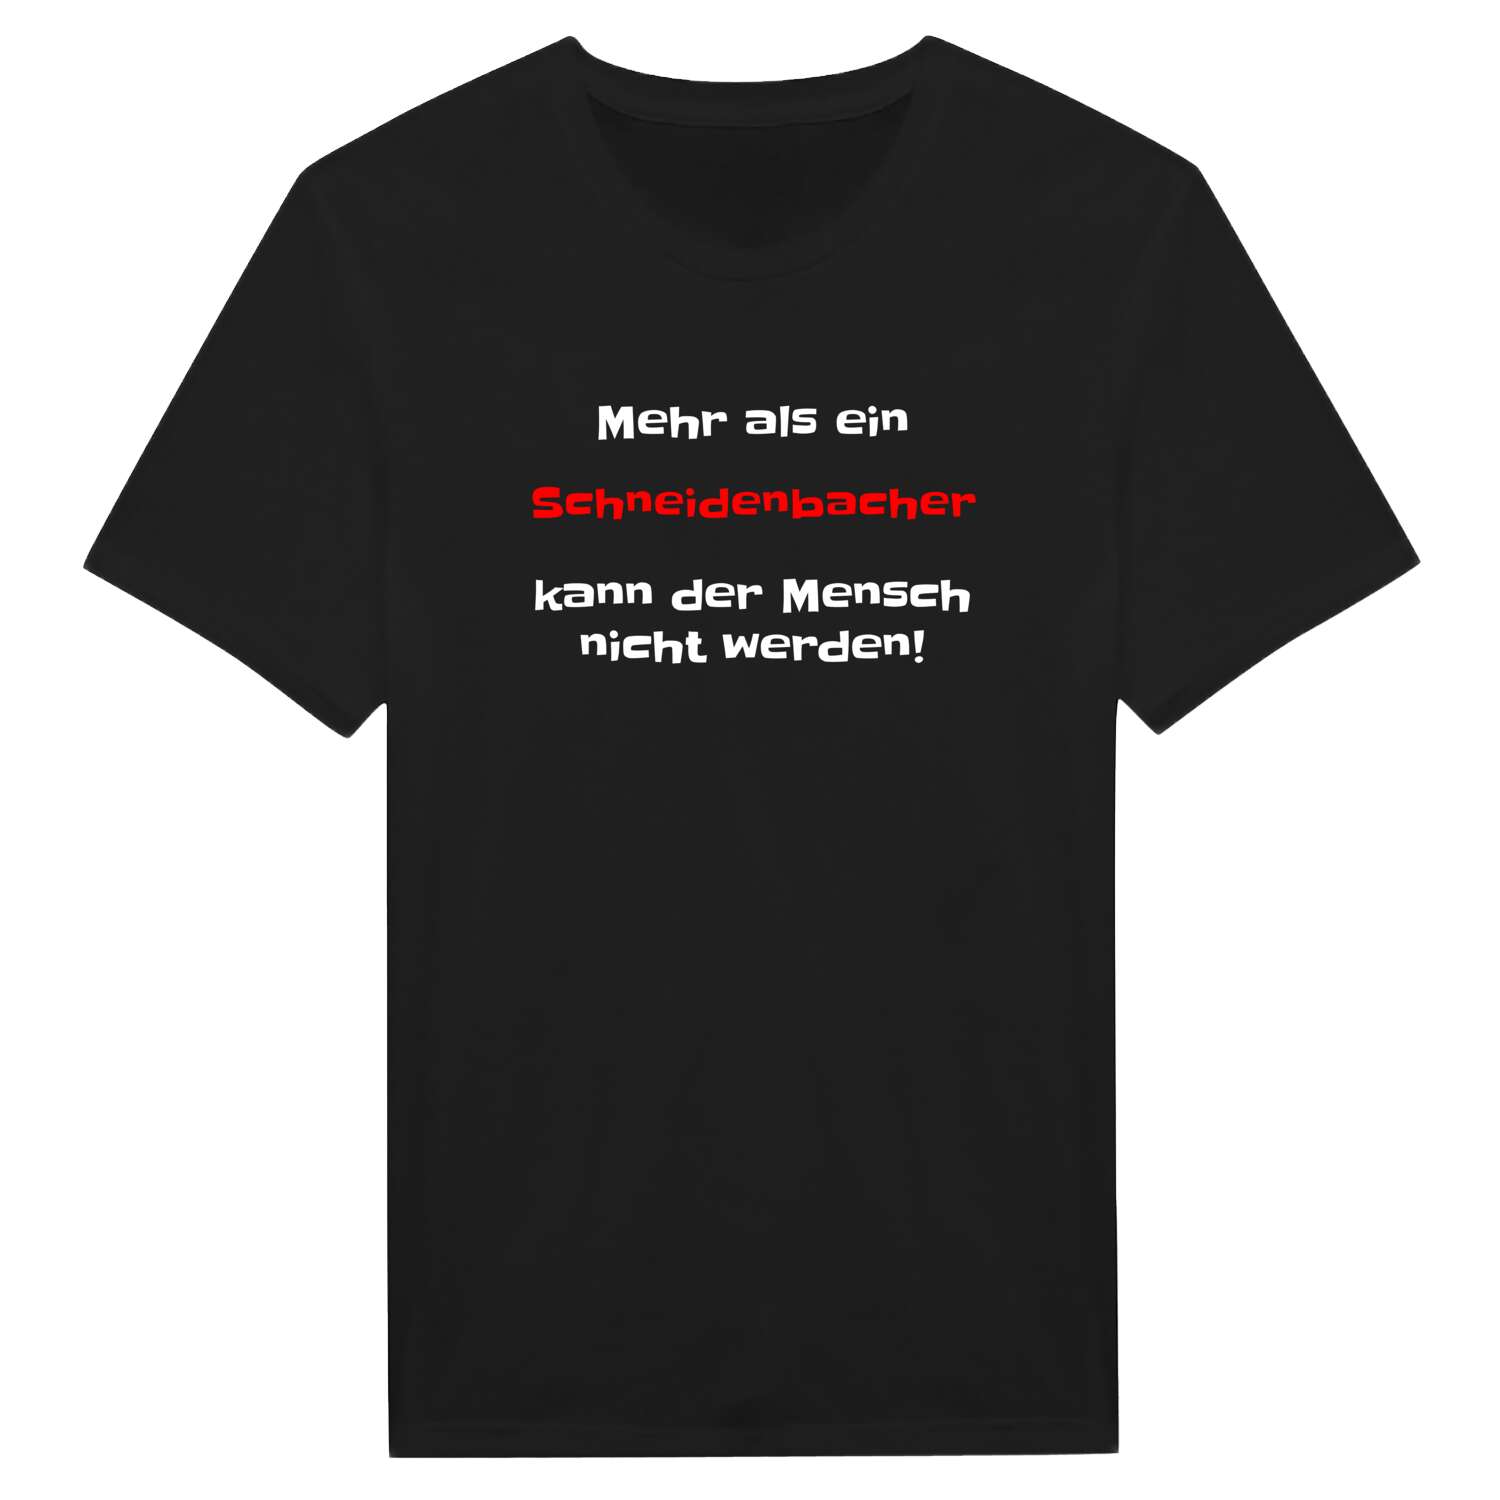 Schneidenbach T-Shirt »Mehr als ein«